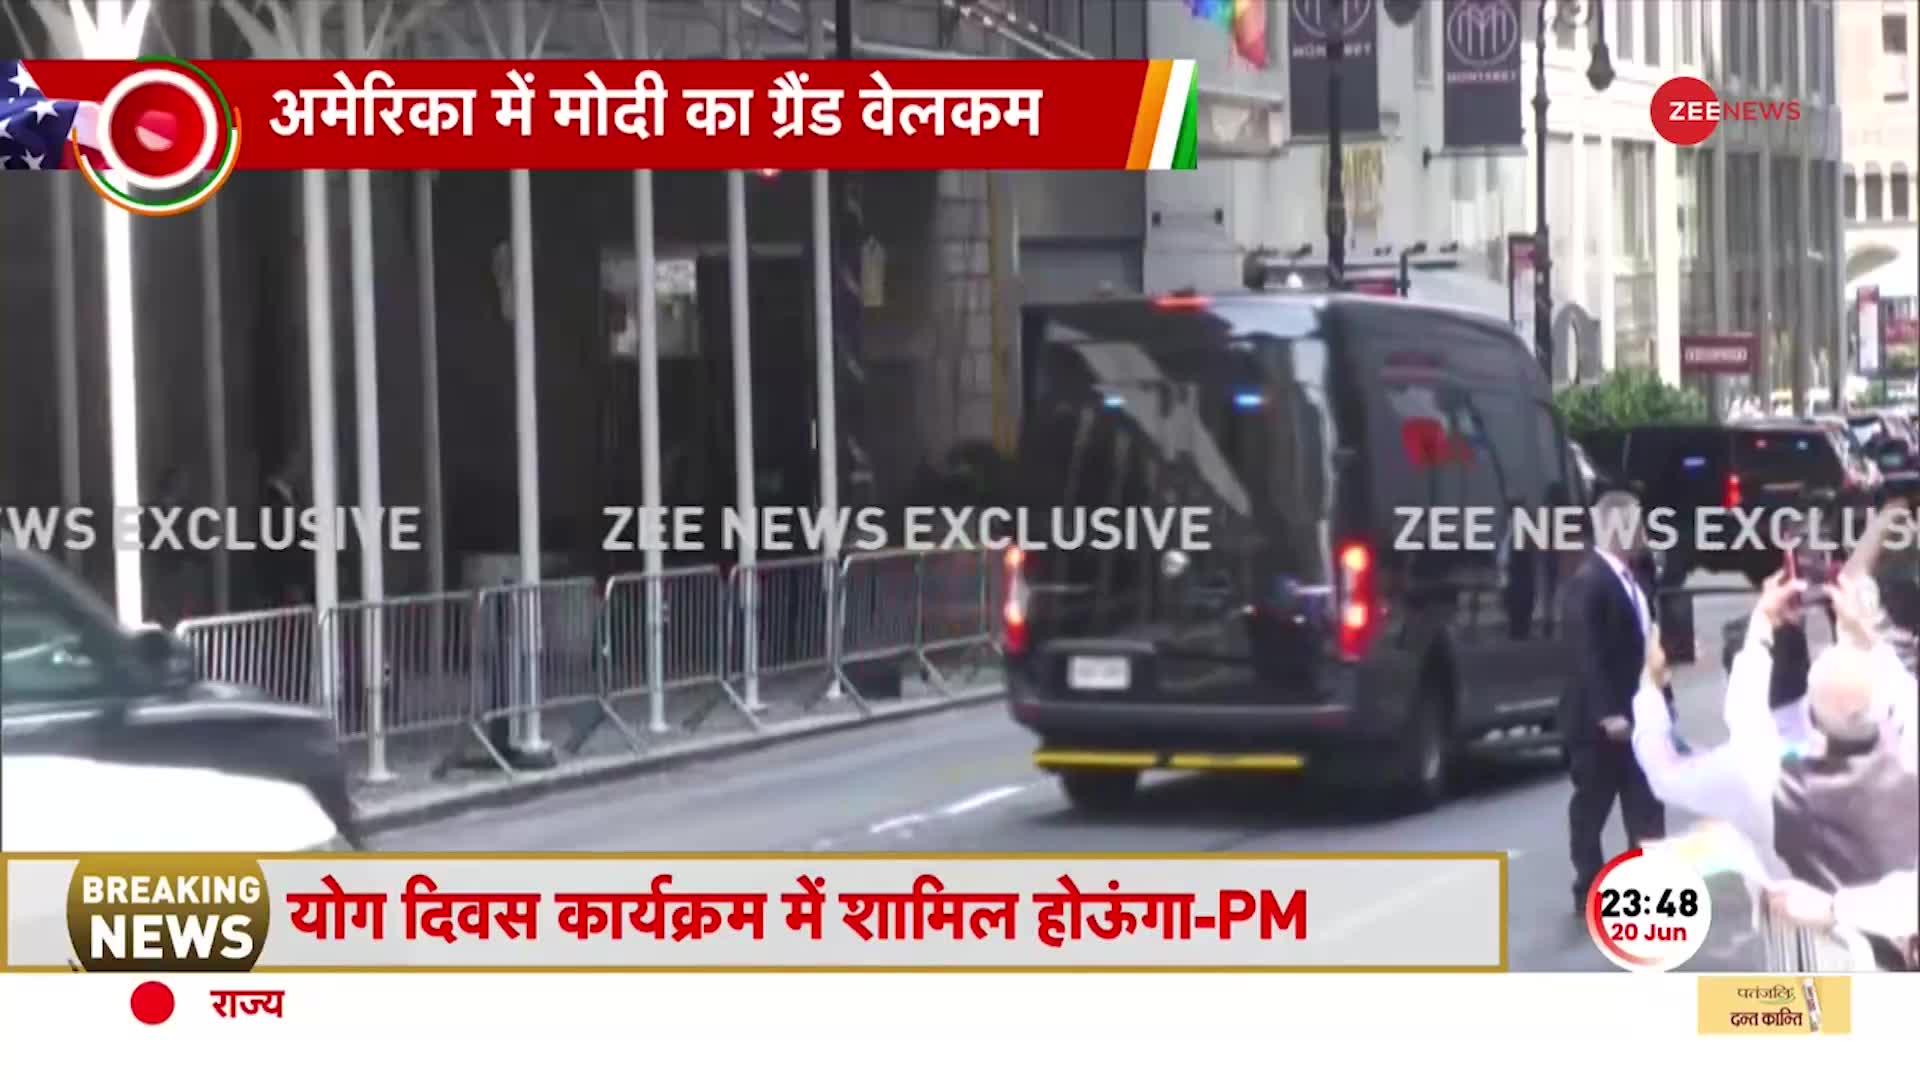 होटल से निकलकर 'अमेरिकी' सड़कों पर अचानक पैदल चलने लगे PM मोदी